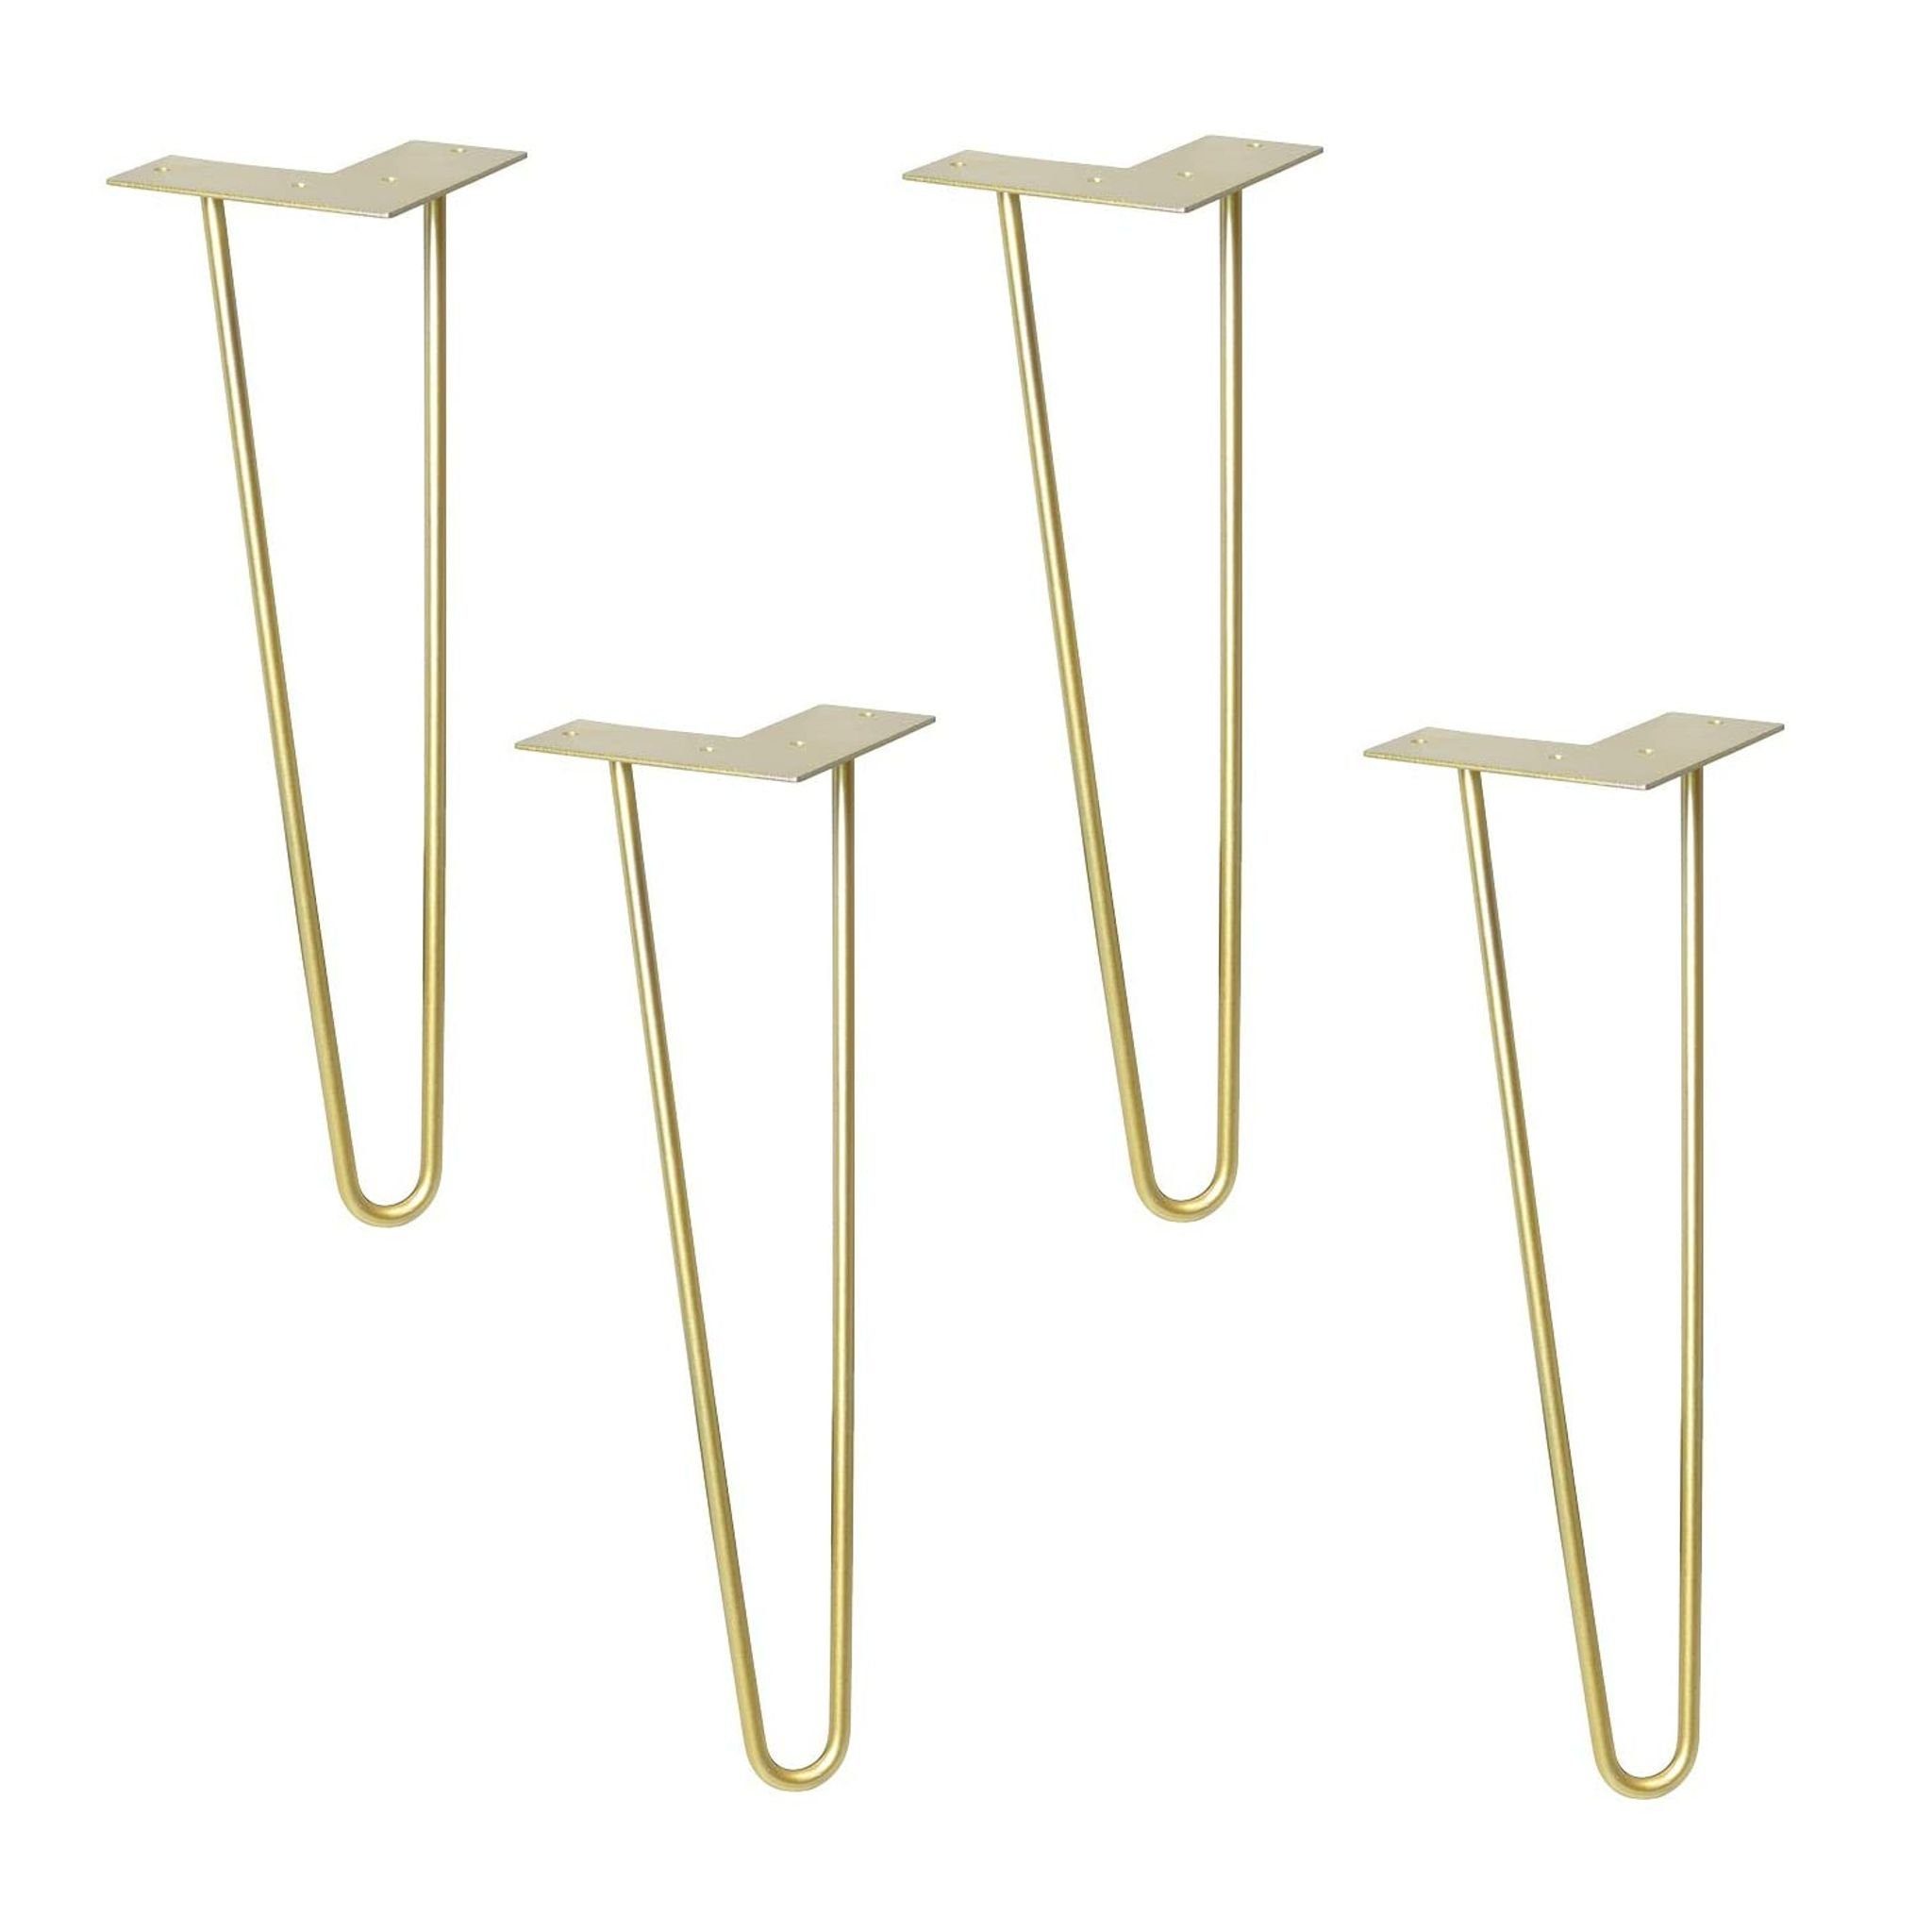 WAGNER design yourself Möbelfuß Möbelbein/Tischbein - HAIRPIN LEGS 4er Set - Retro Style - 12 x 12 x 40 cm in diversen Farben, Bein konisch/schräg verlaufend, mit integrierter Anschraubplatte gold